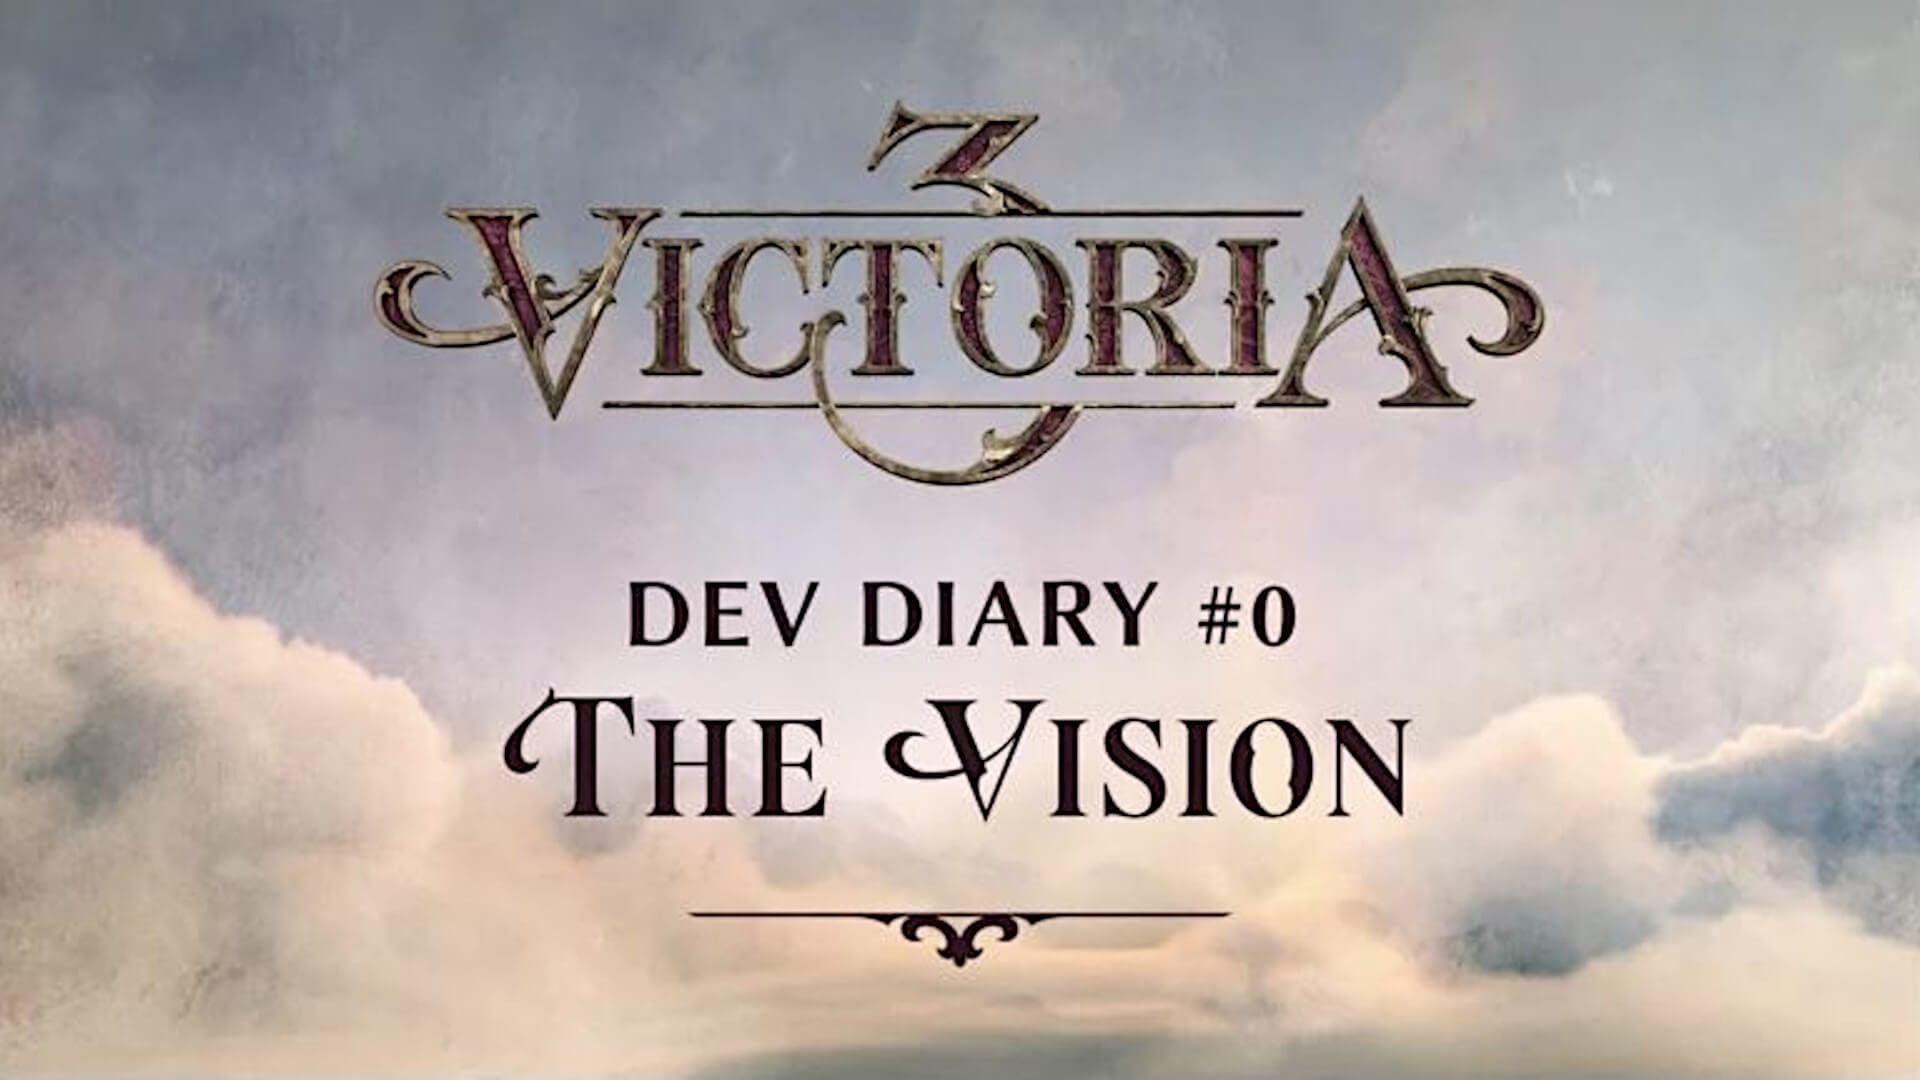 Victoria 3 Confirmed Via Paradox Forum Leak